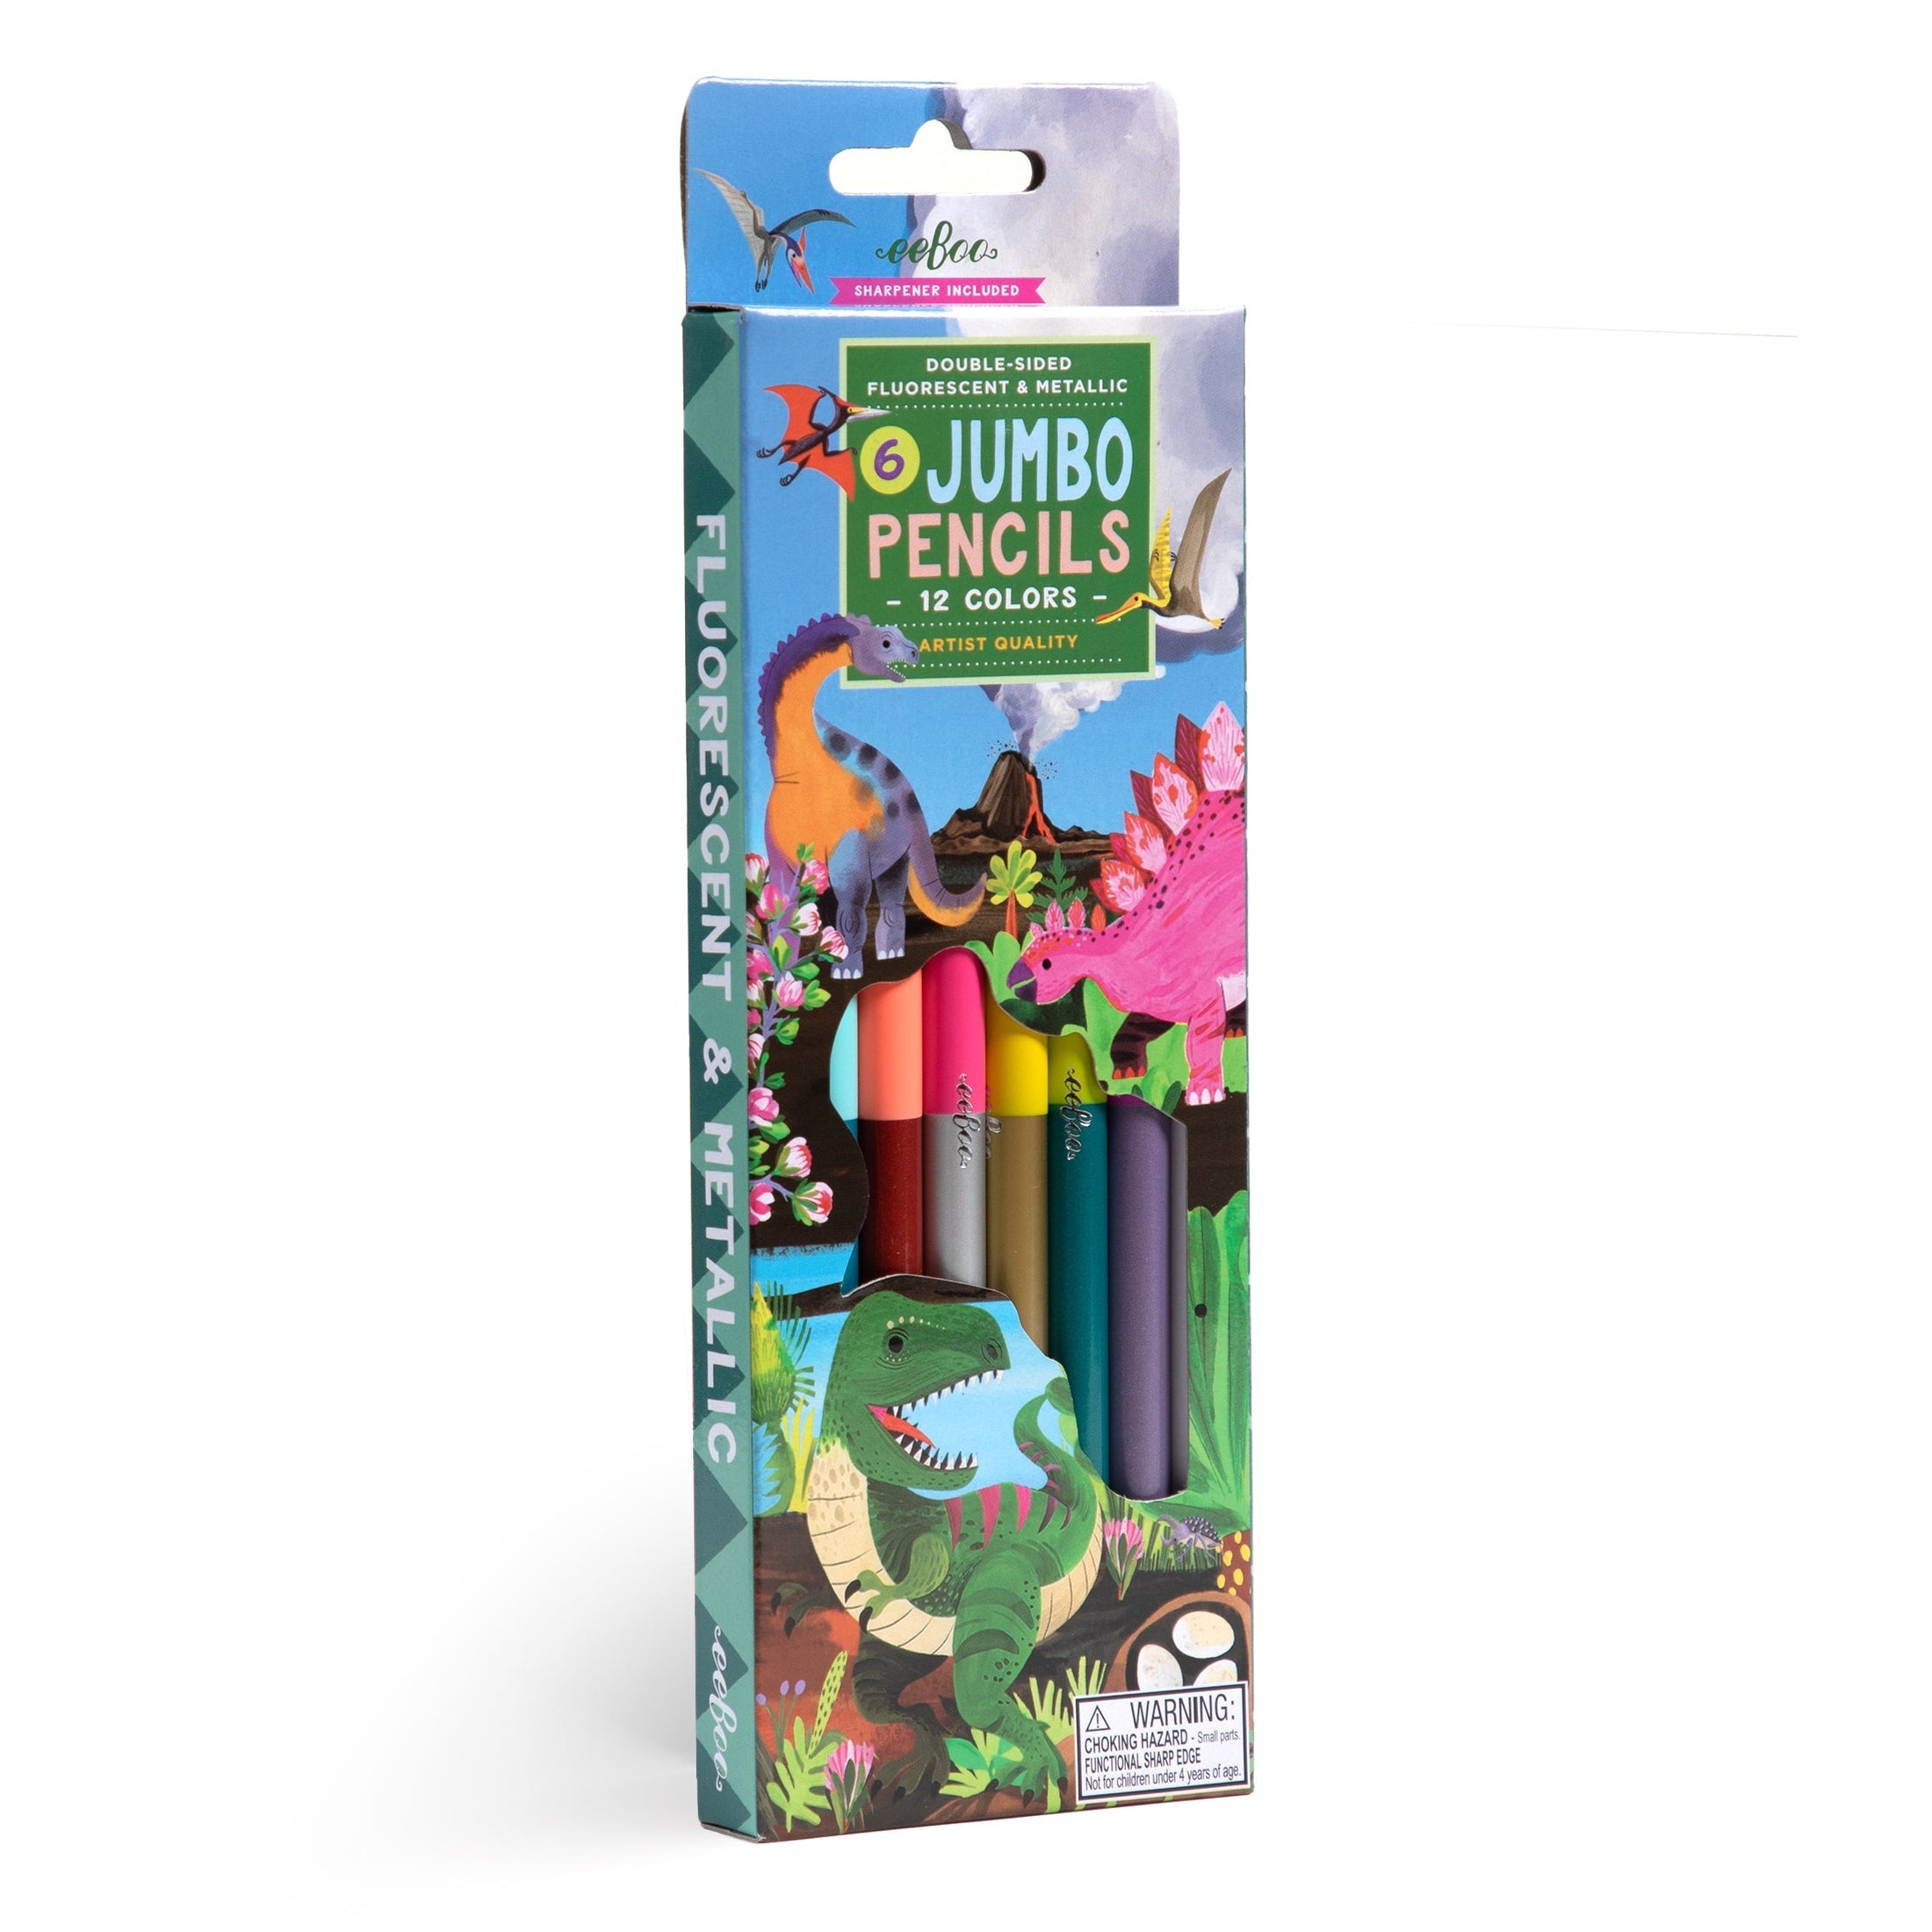 Dinosaur 6 Jumbo Special Pencils